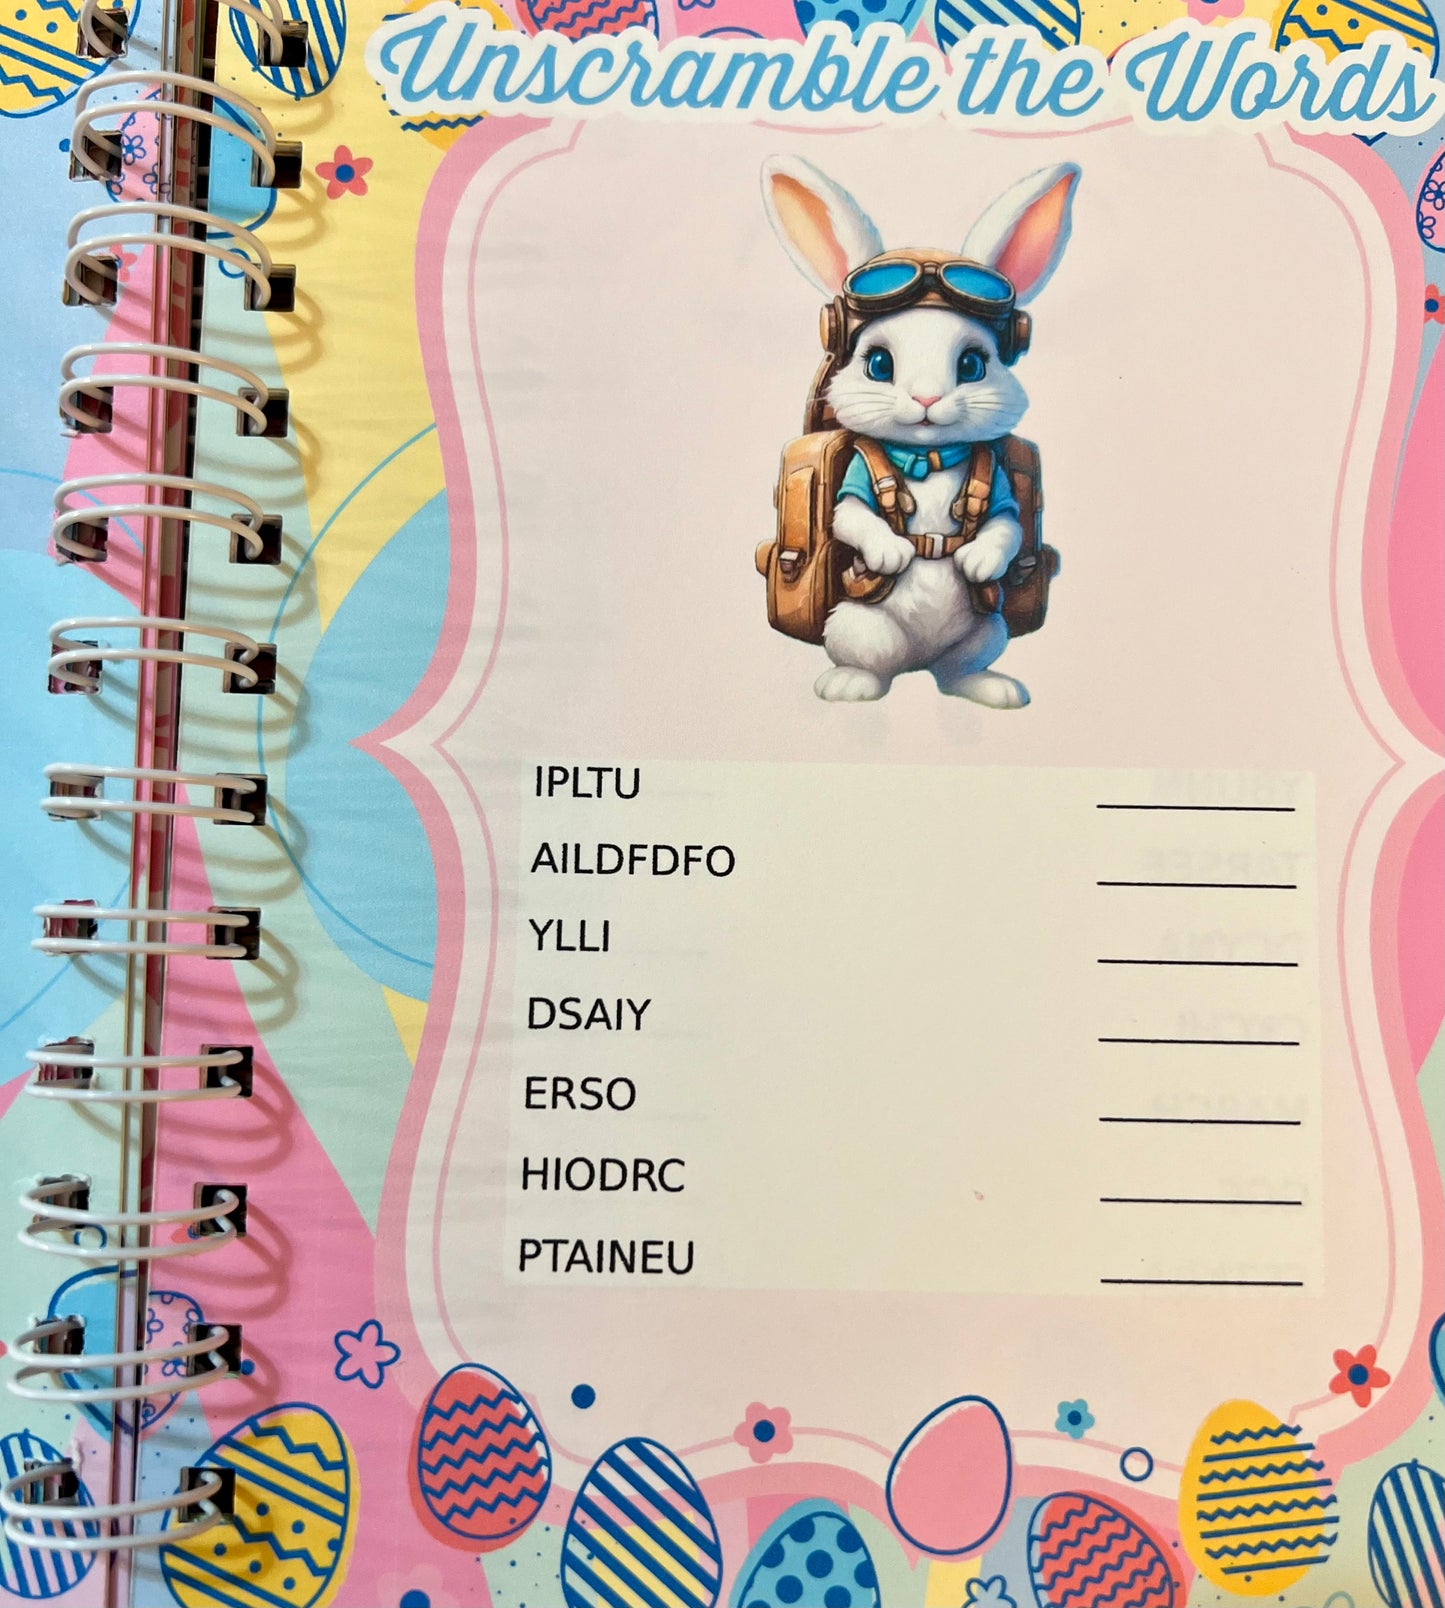 An Easter themed children’s workbook